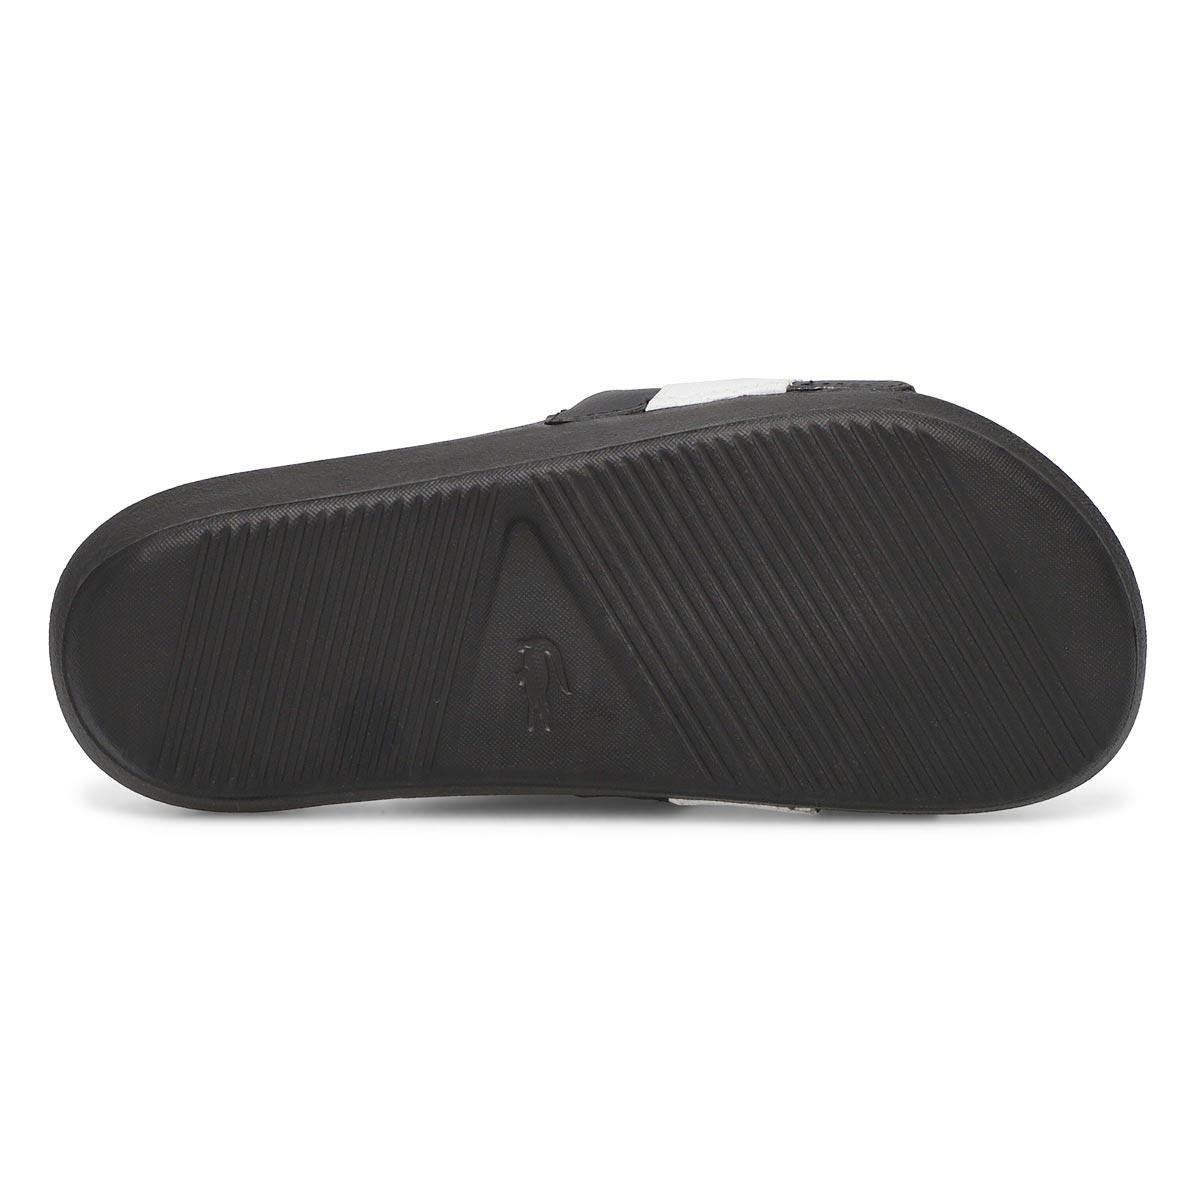 Women's Croco Slide Sandal - Black/White